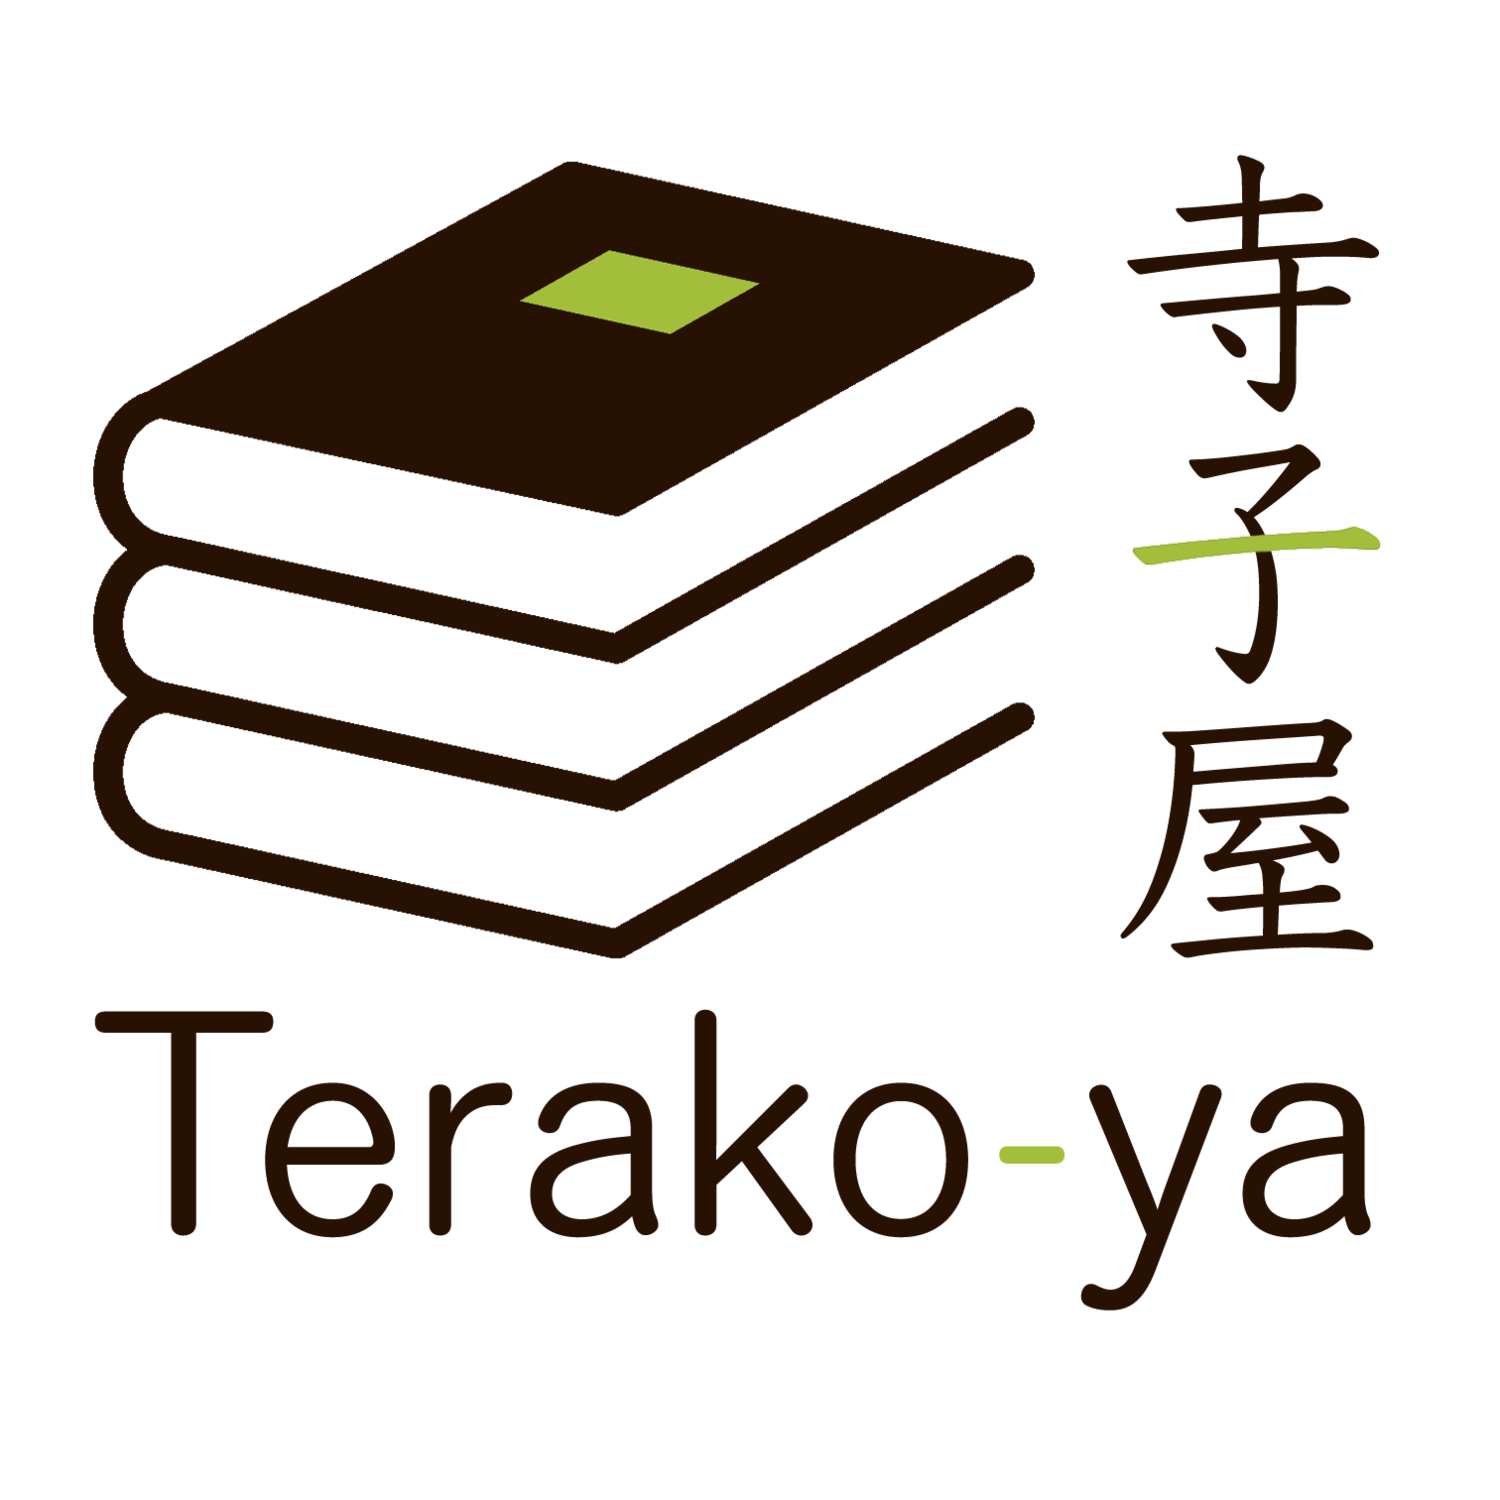  Terako-ya 寺子屋